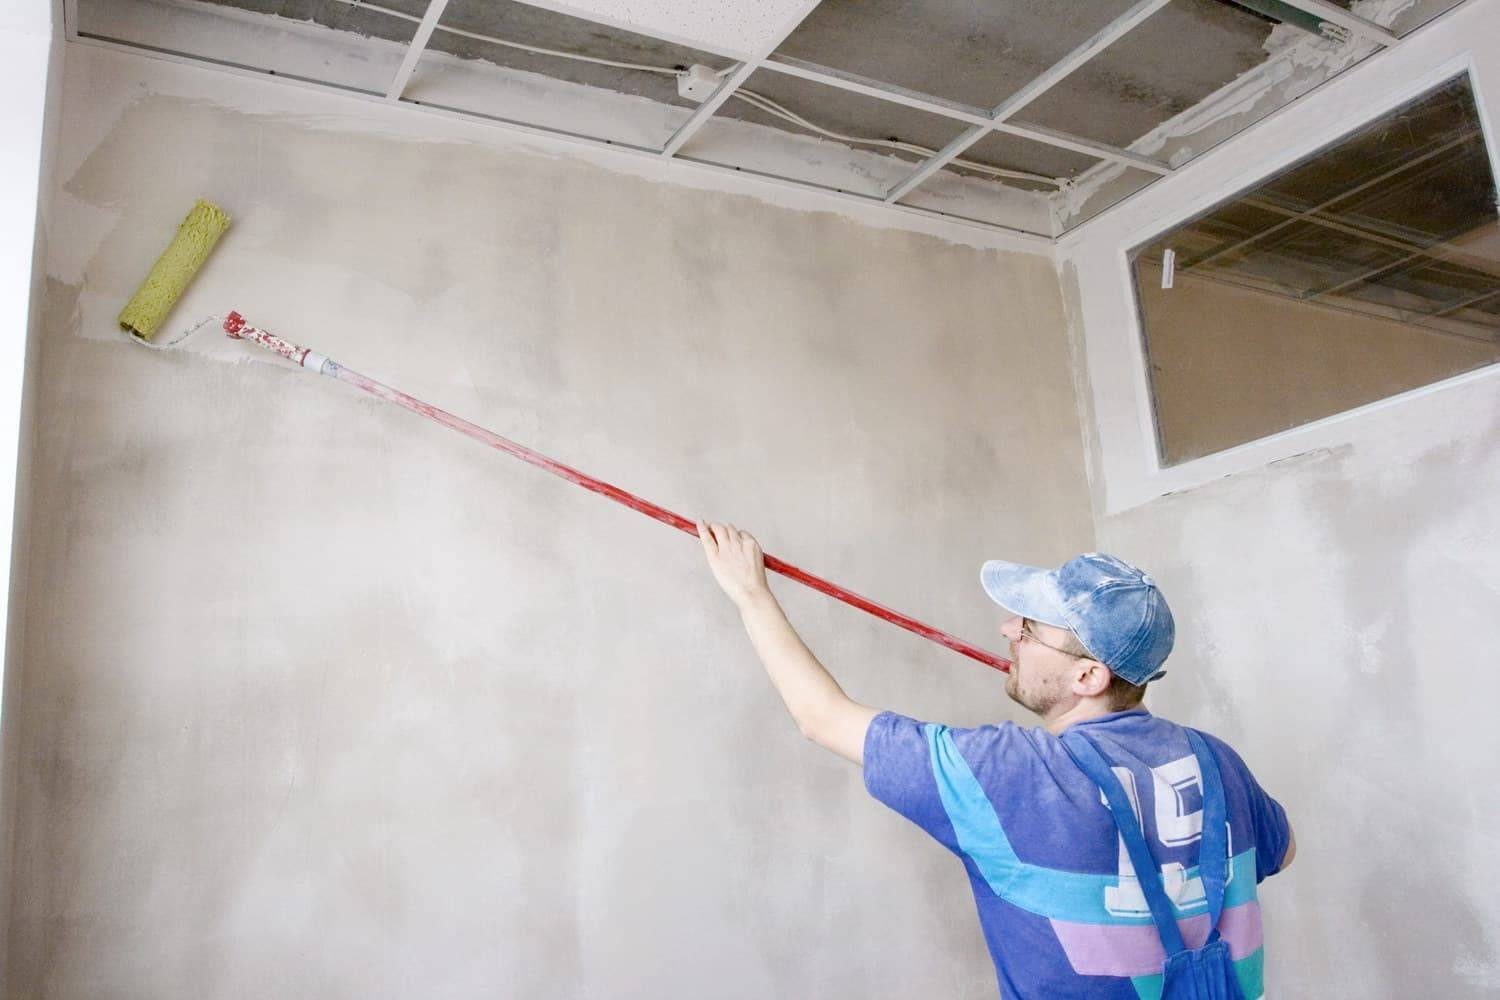 Покраска потолка и стен - подготовка поверхности, технология нанесения краски кистью, валиком или распылителем